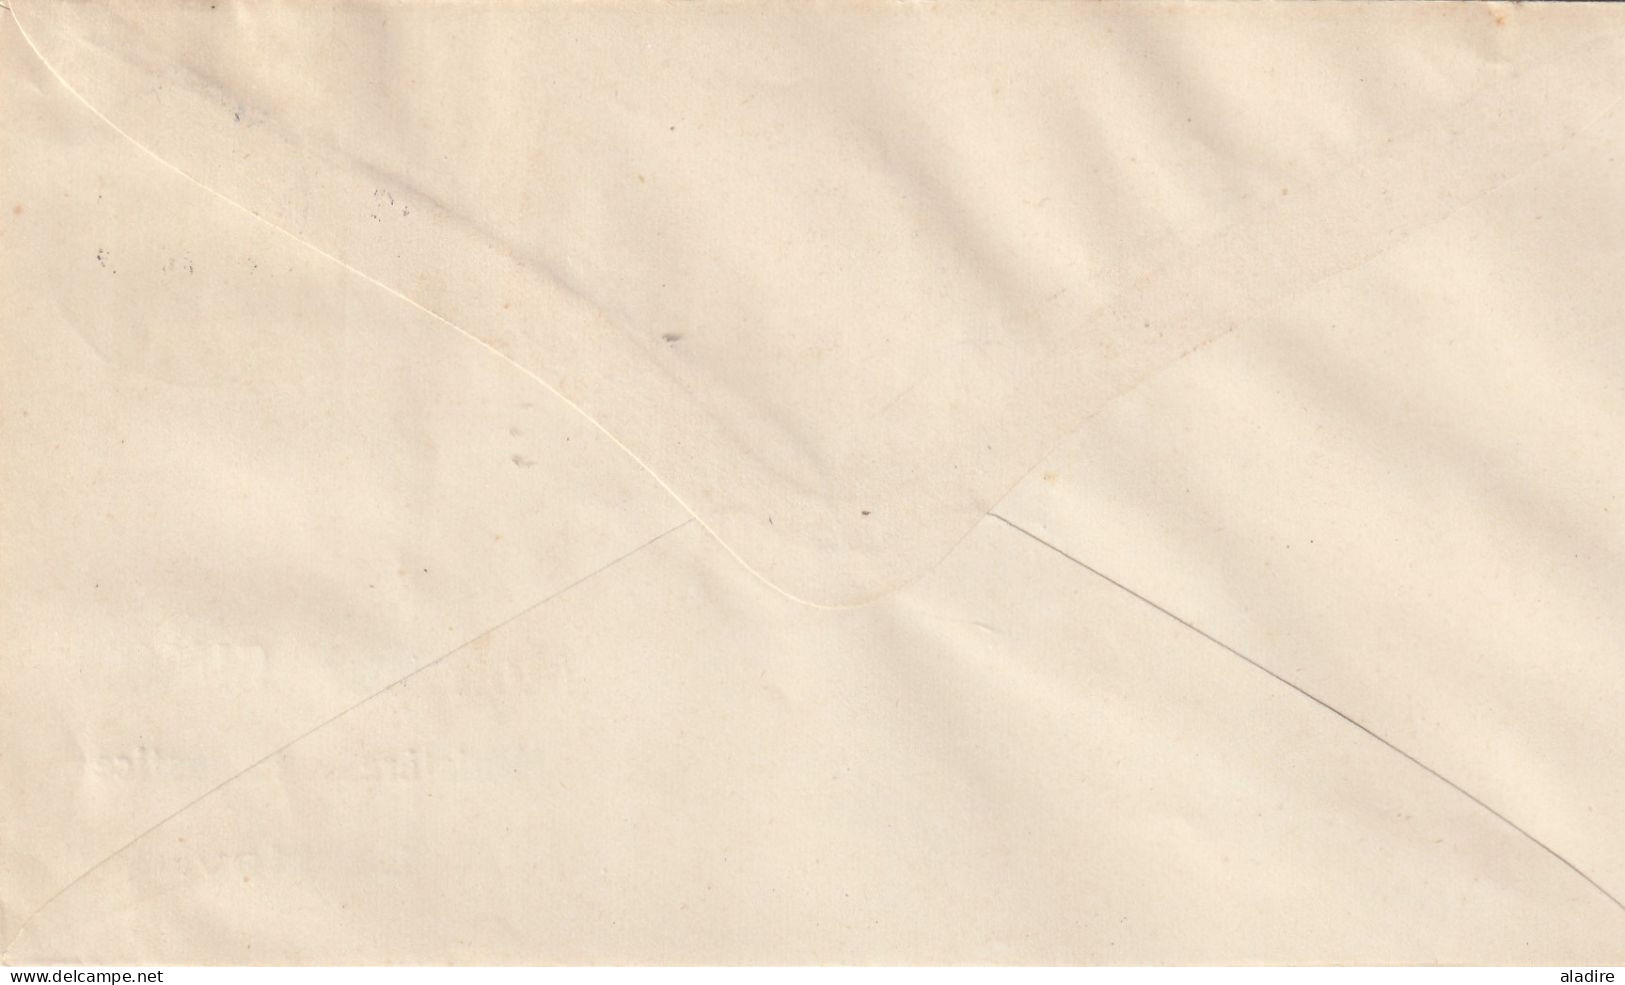 1914/1915 - Collection de 14 enveloppes et cartes - LE HAVRE SPECIAL - gouvernement belge en exil à Sainte Adresse